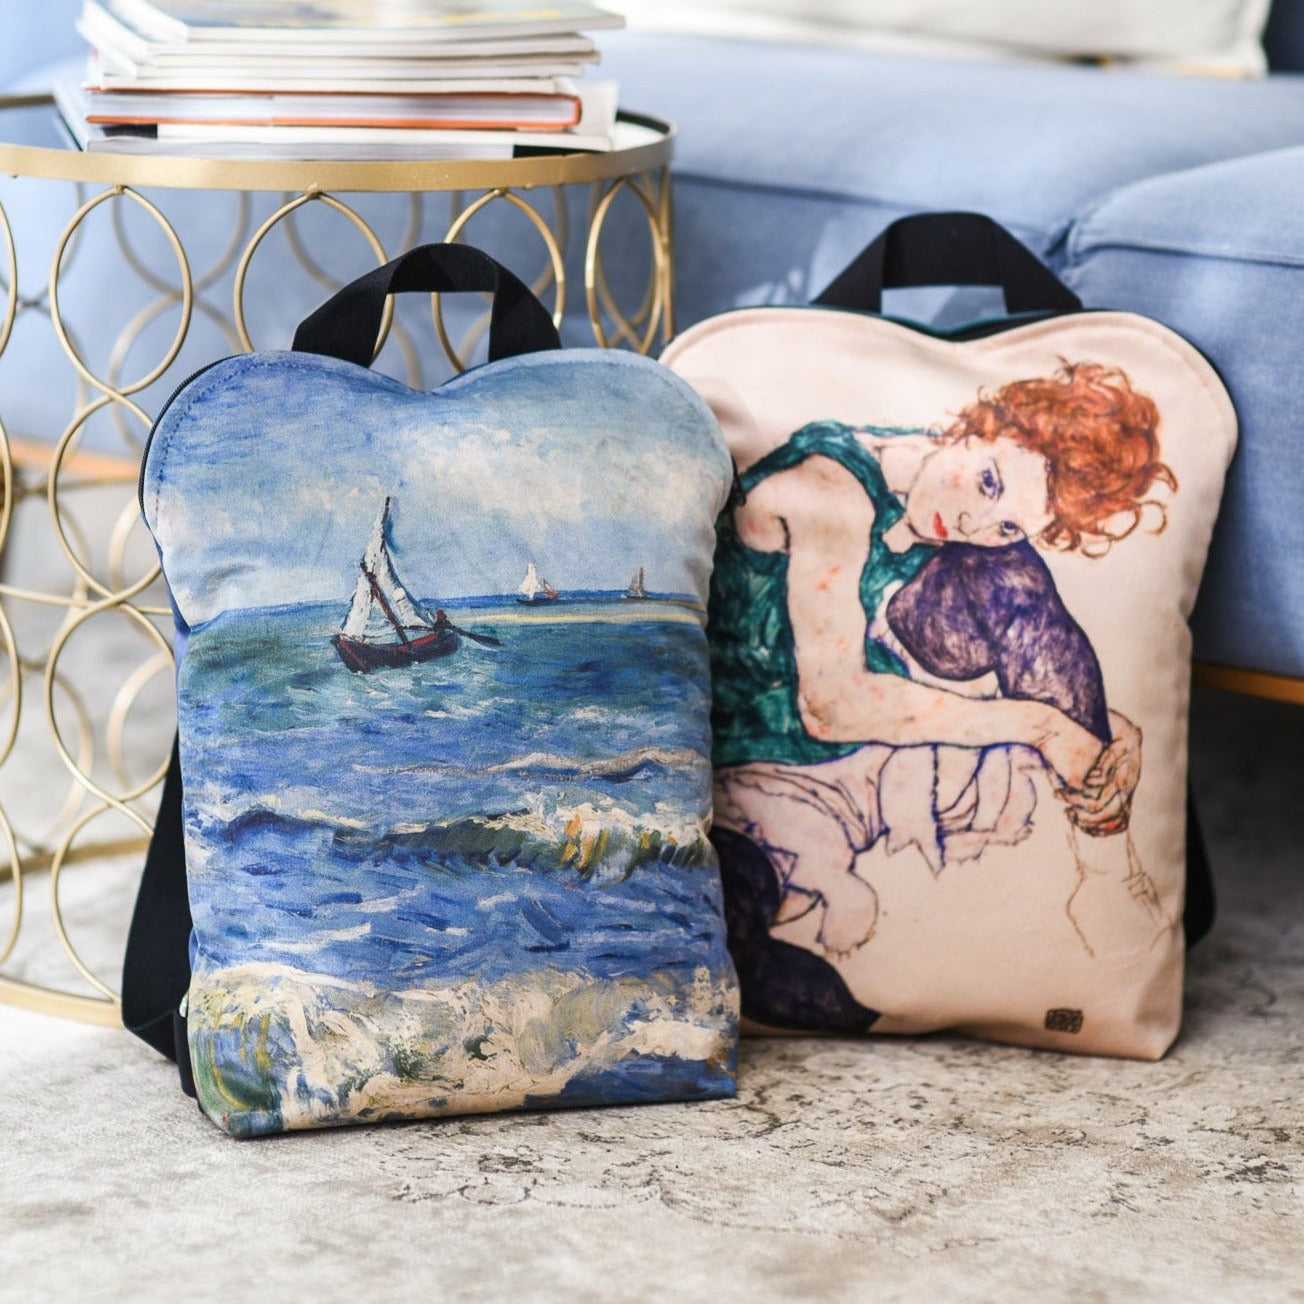 Backpack Vincent van Gogh "The Sea at Les Saintes-Maries-de-la-Mer"